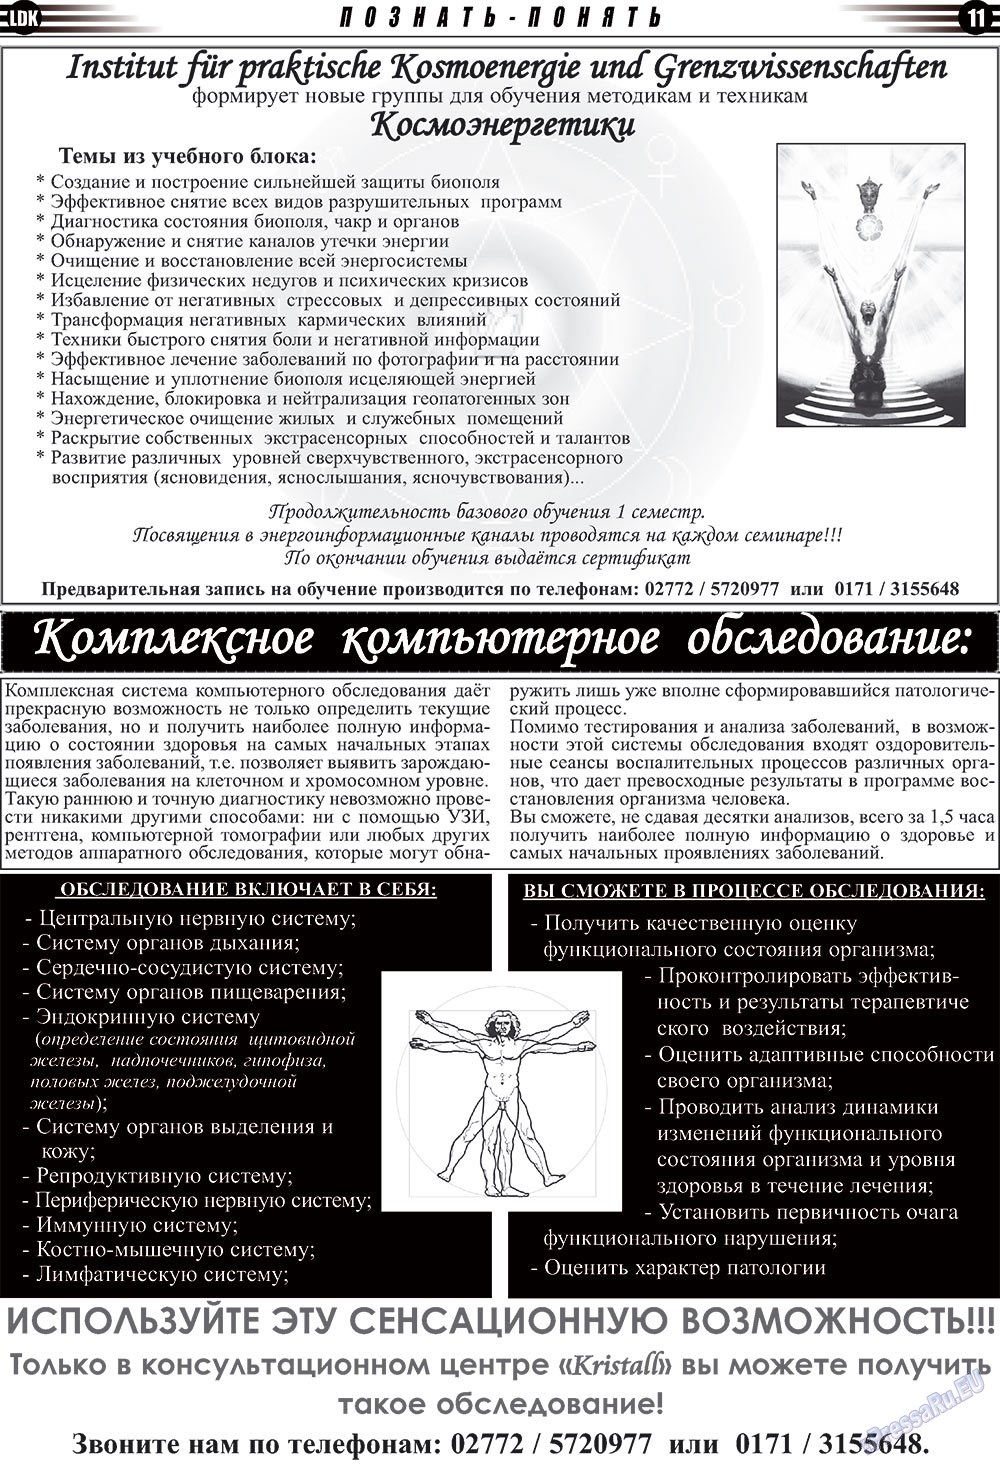 LDK по-русски (газета). 2009 год, номер 6, стр. 11